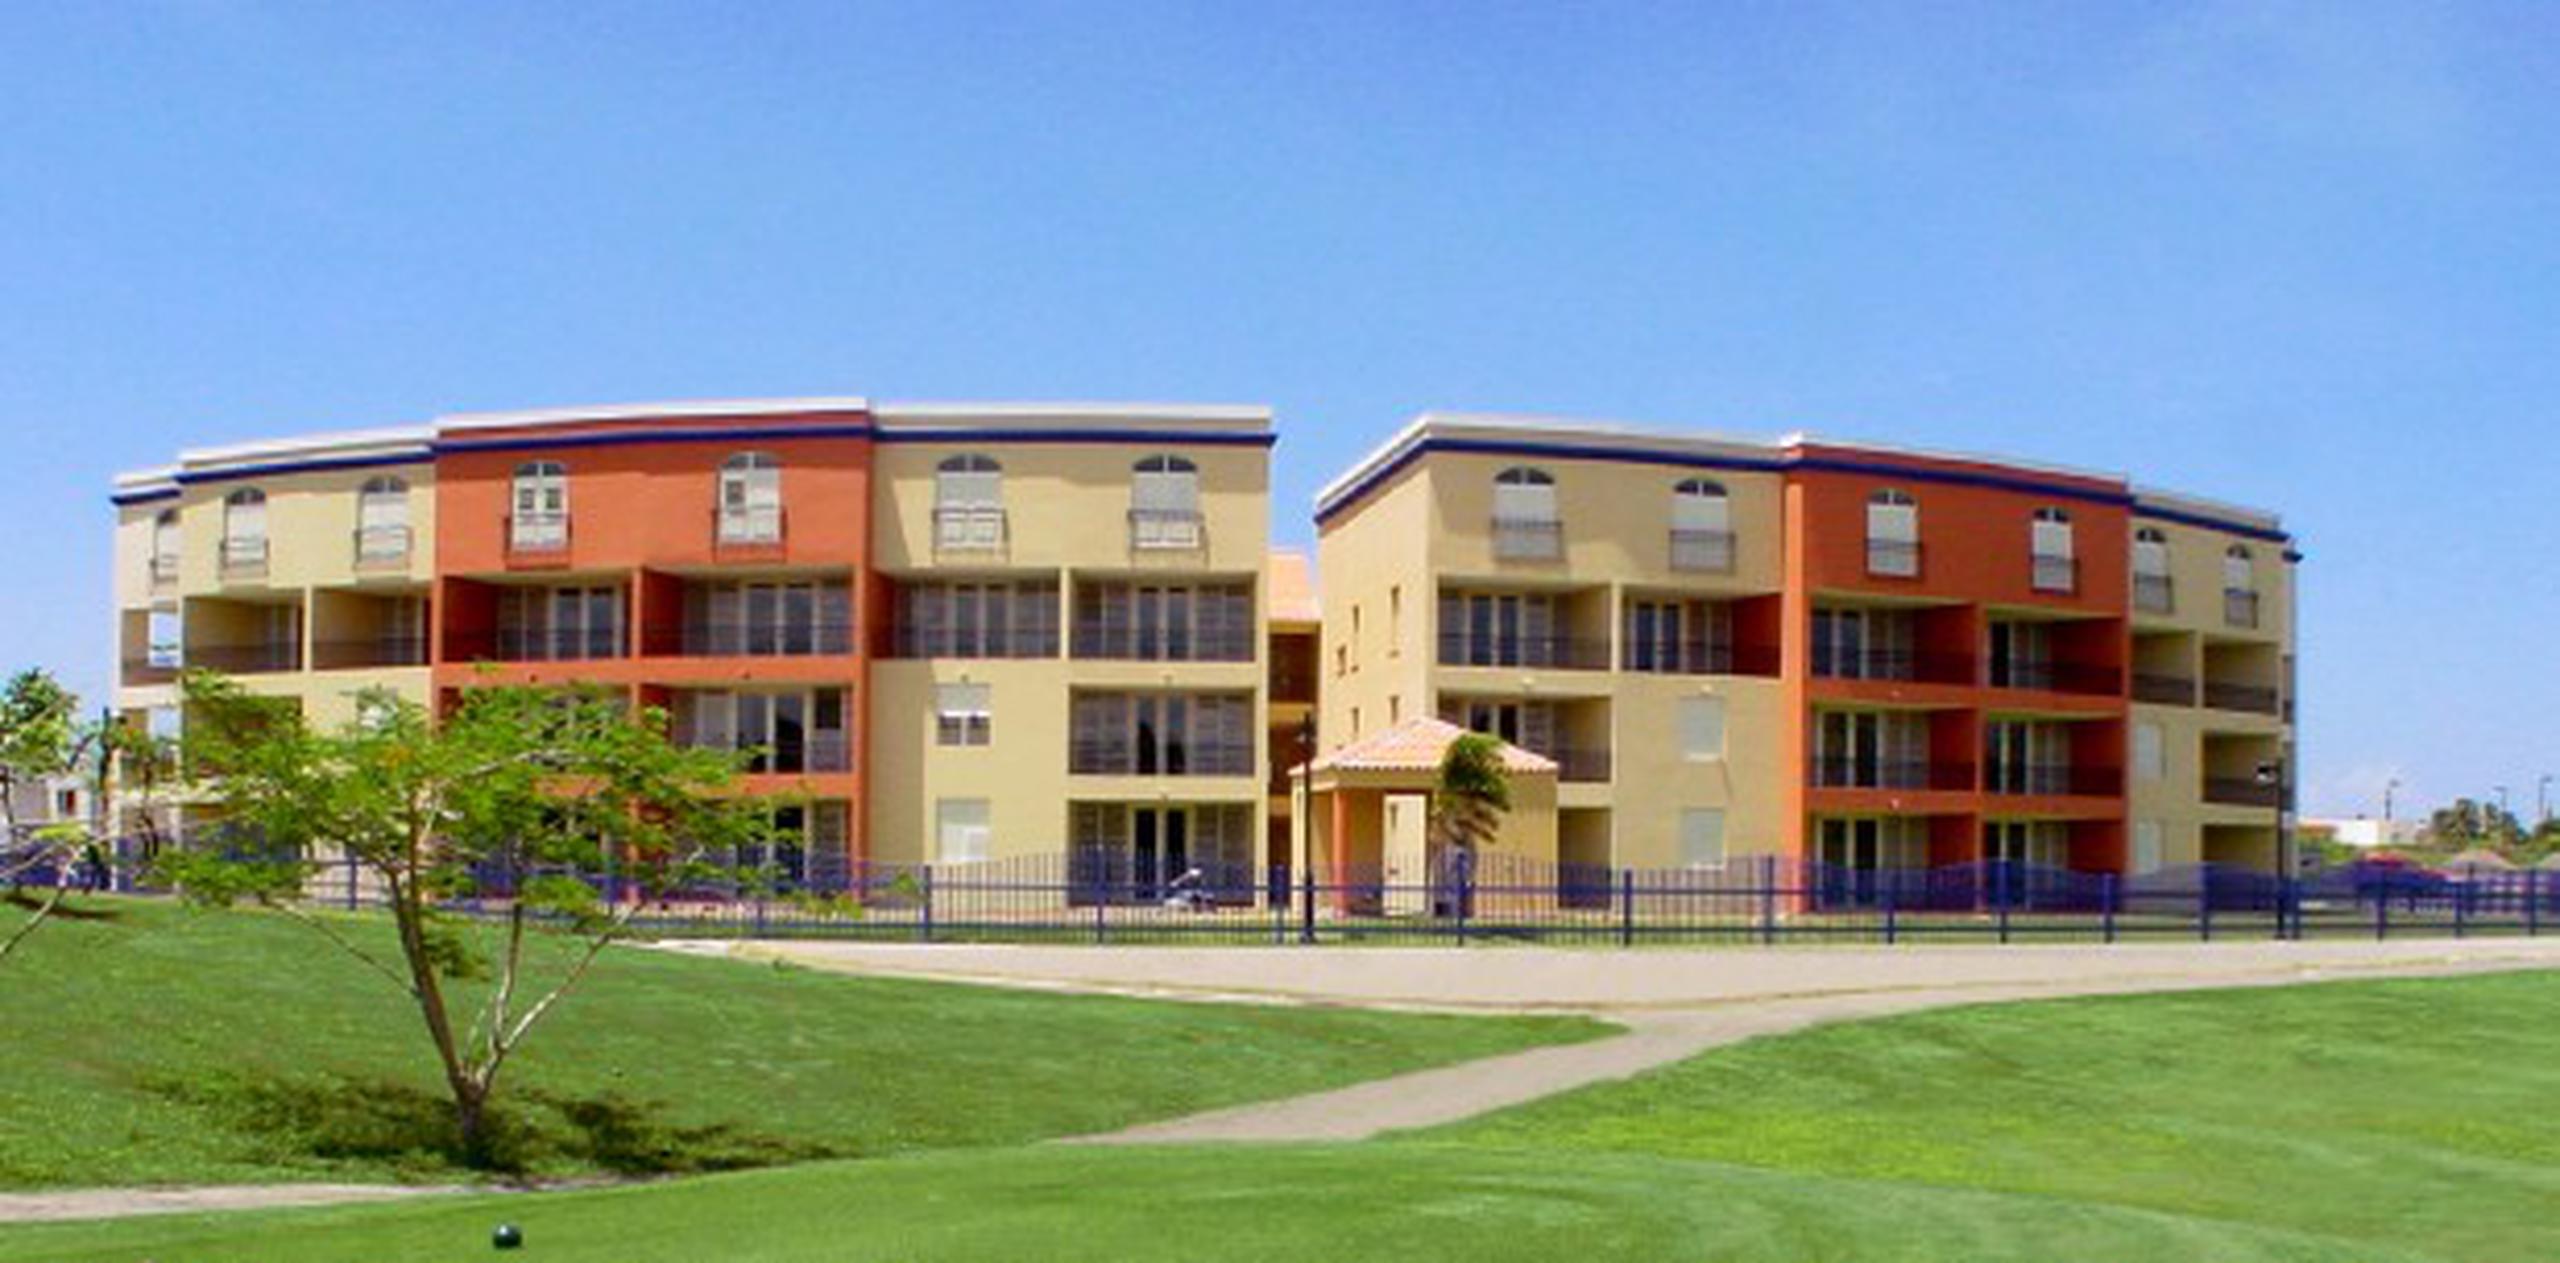 Terrazas del Golf consta de 34 apartamentos de una, dos y tres habitaciones con una amplia terraza con vista hacia el campo de golf.